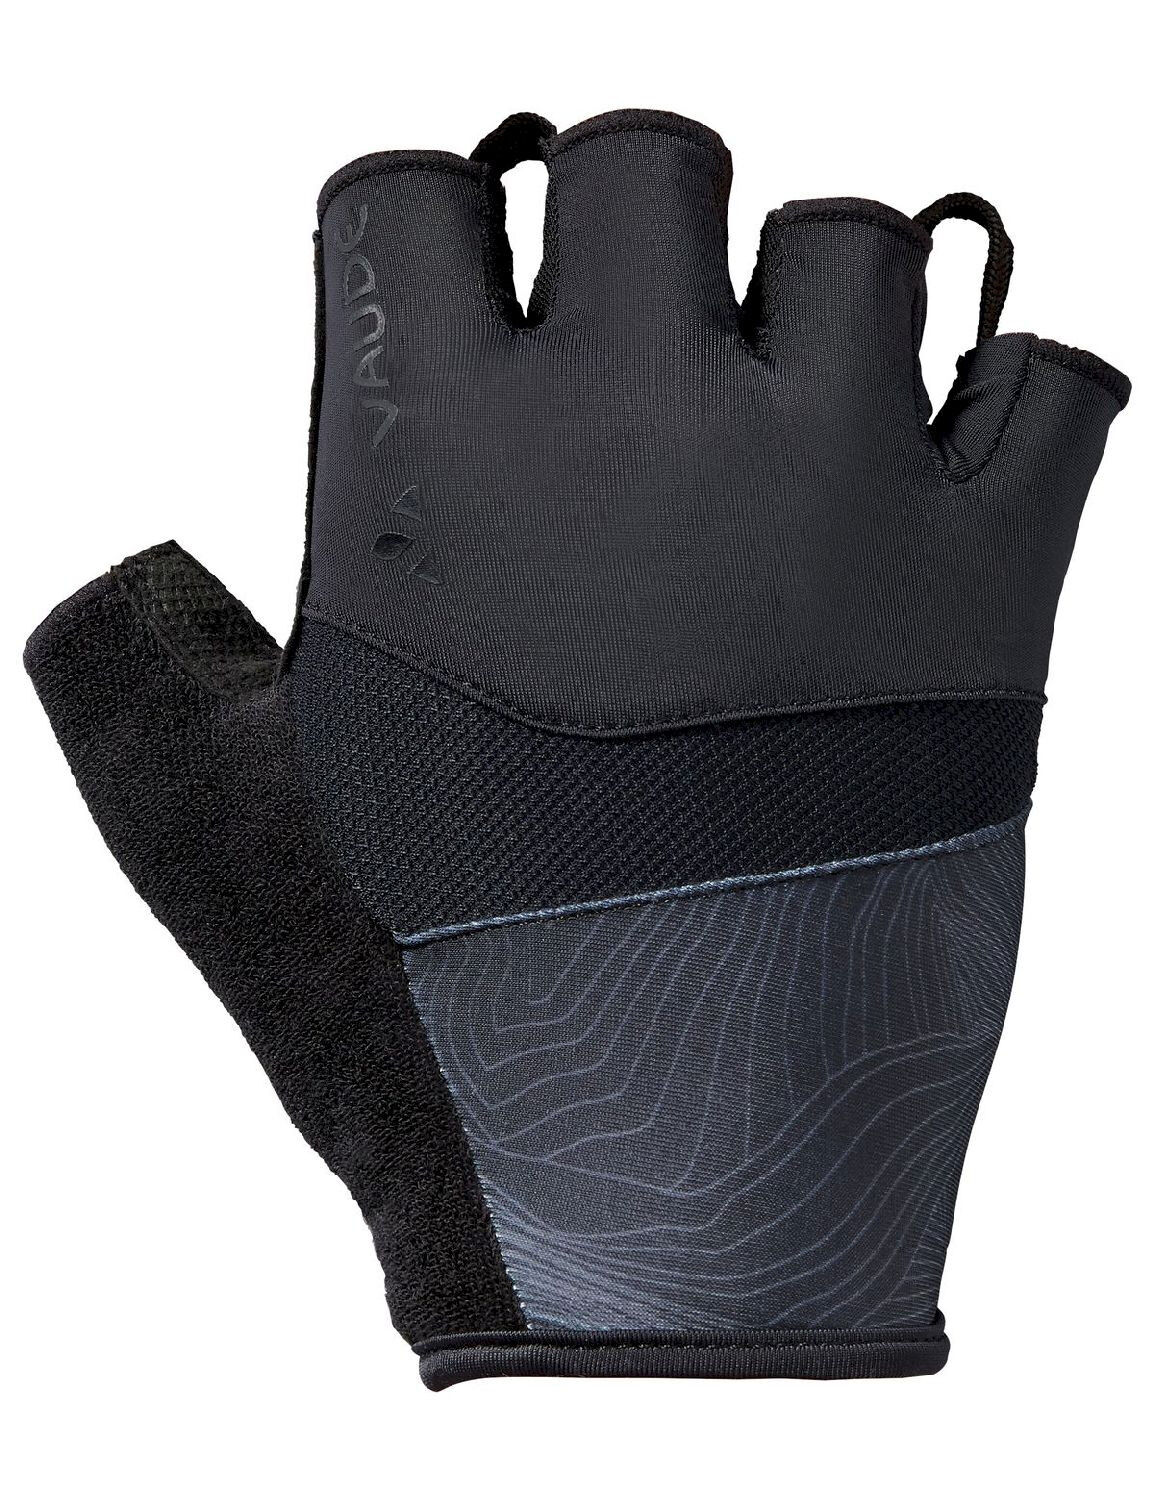 Vaude Advanced Gloves II - Fietshandschoenen - Heren